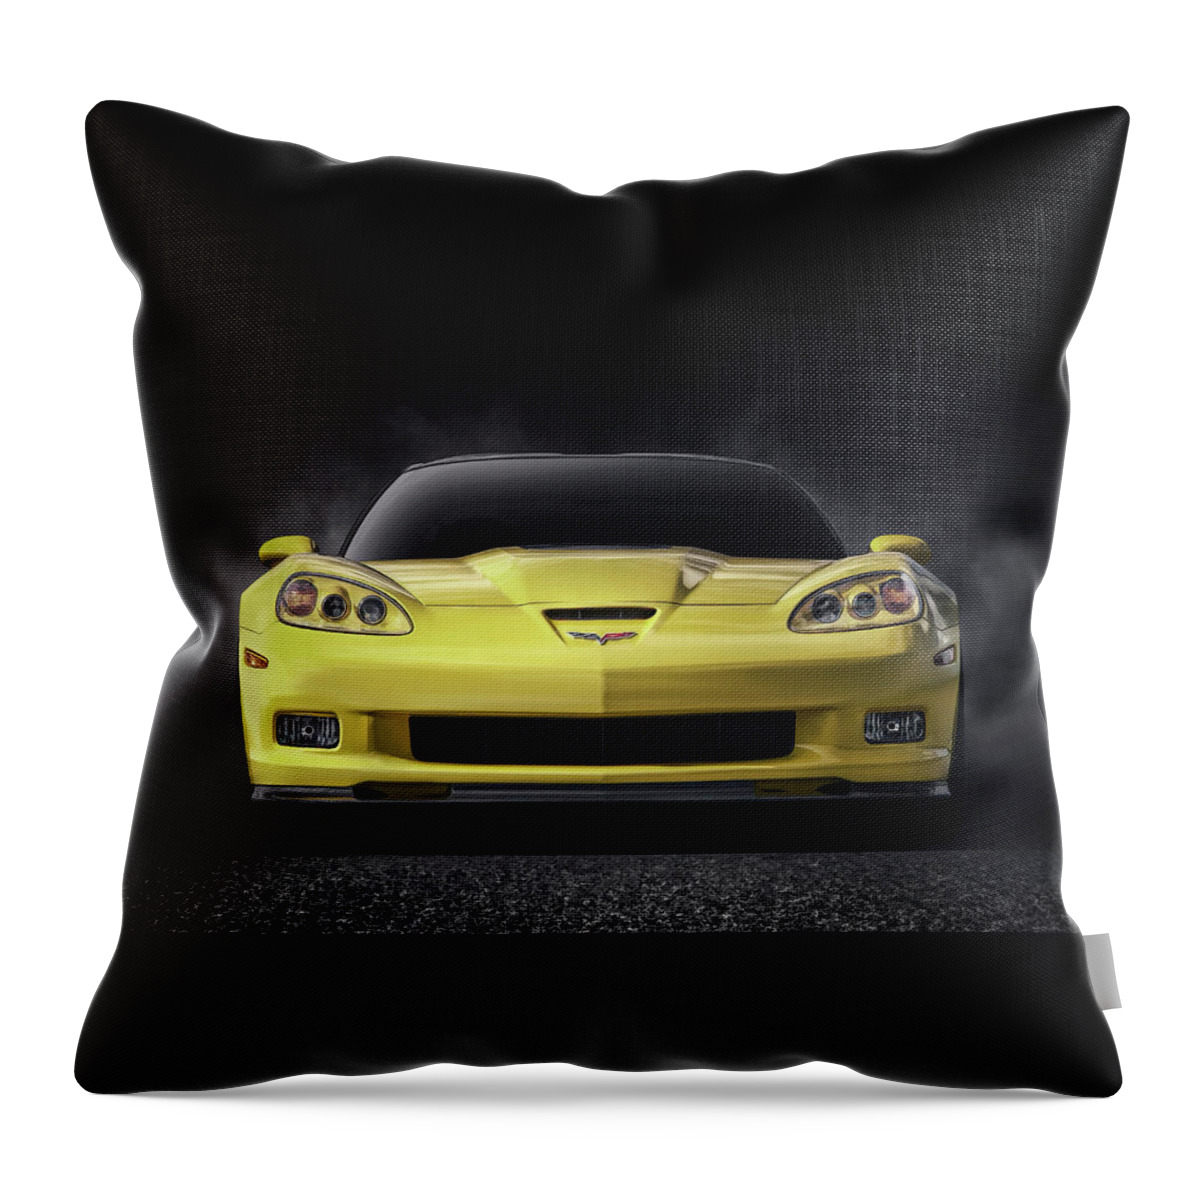 Corvette Throw Pillow featuring the digital art C6 Zr1 by Douglas Pittman